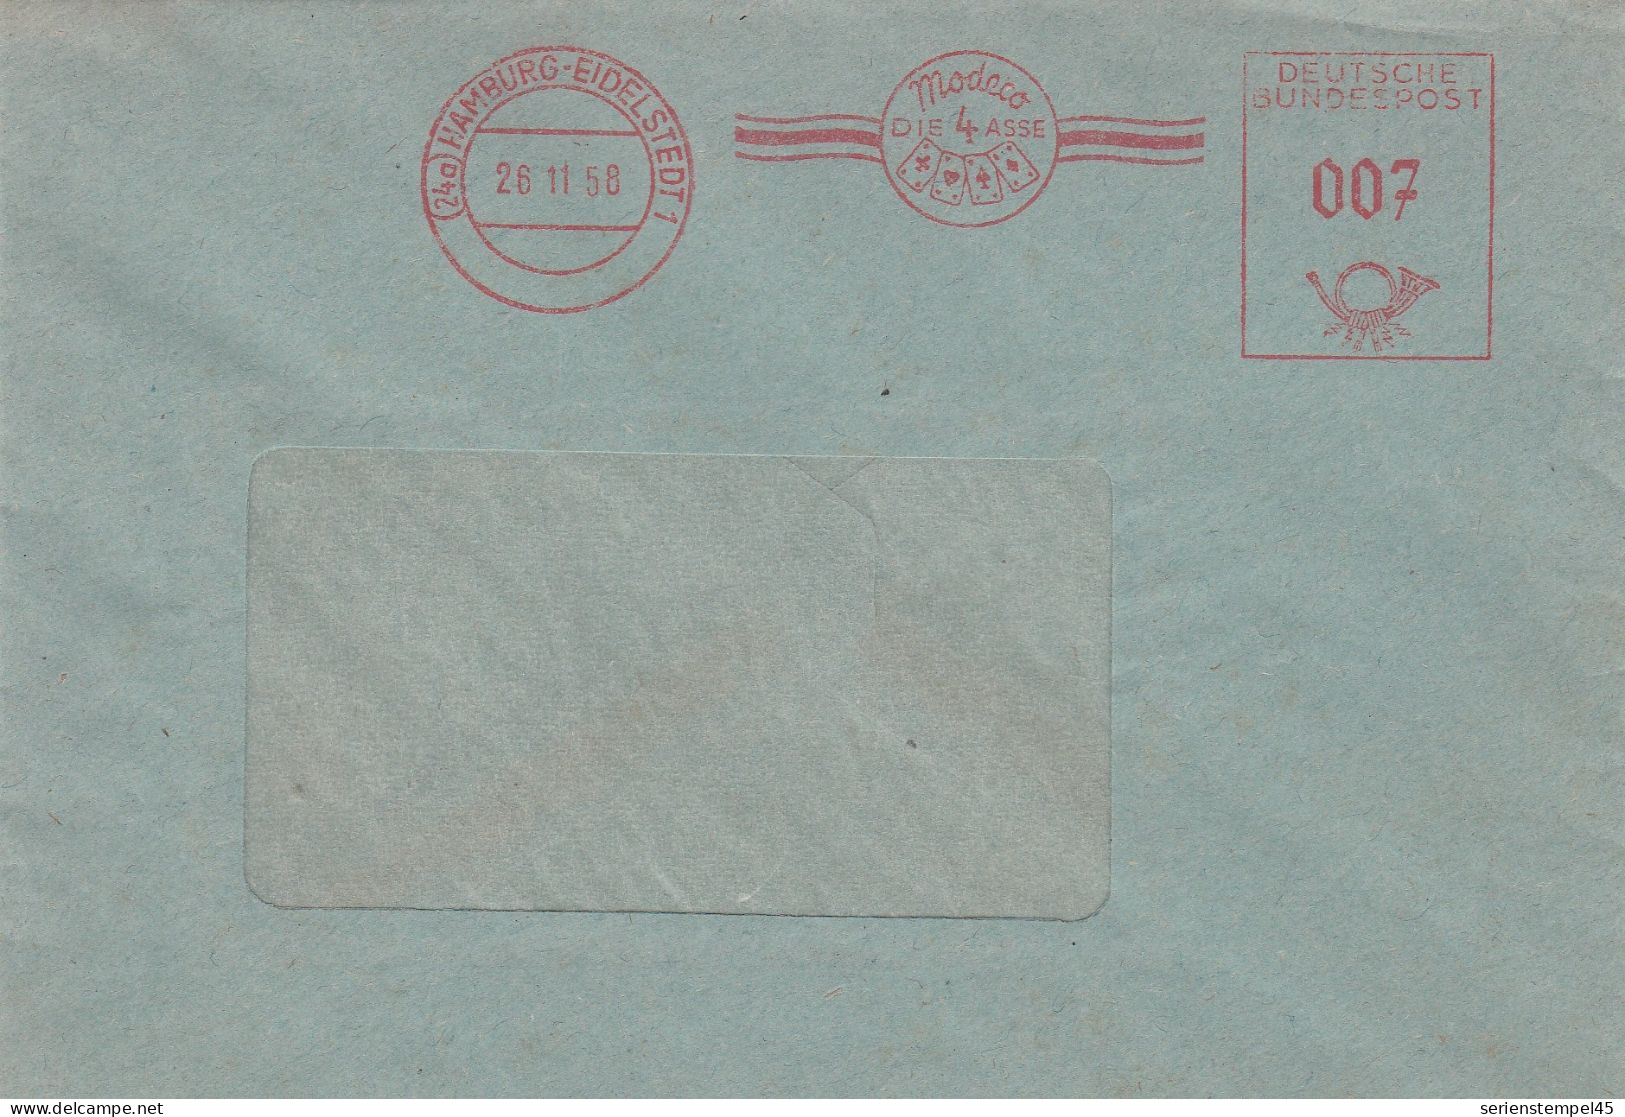 Bund Brief Mit Freistempel Rot Mit Motiv Kartenspiel Hamburg Eidelstedt 1958 Modeco Die 4 Asse - Zonder Classificatie